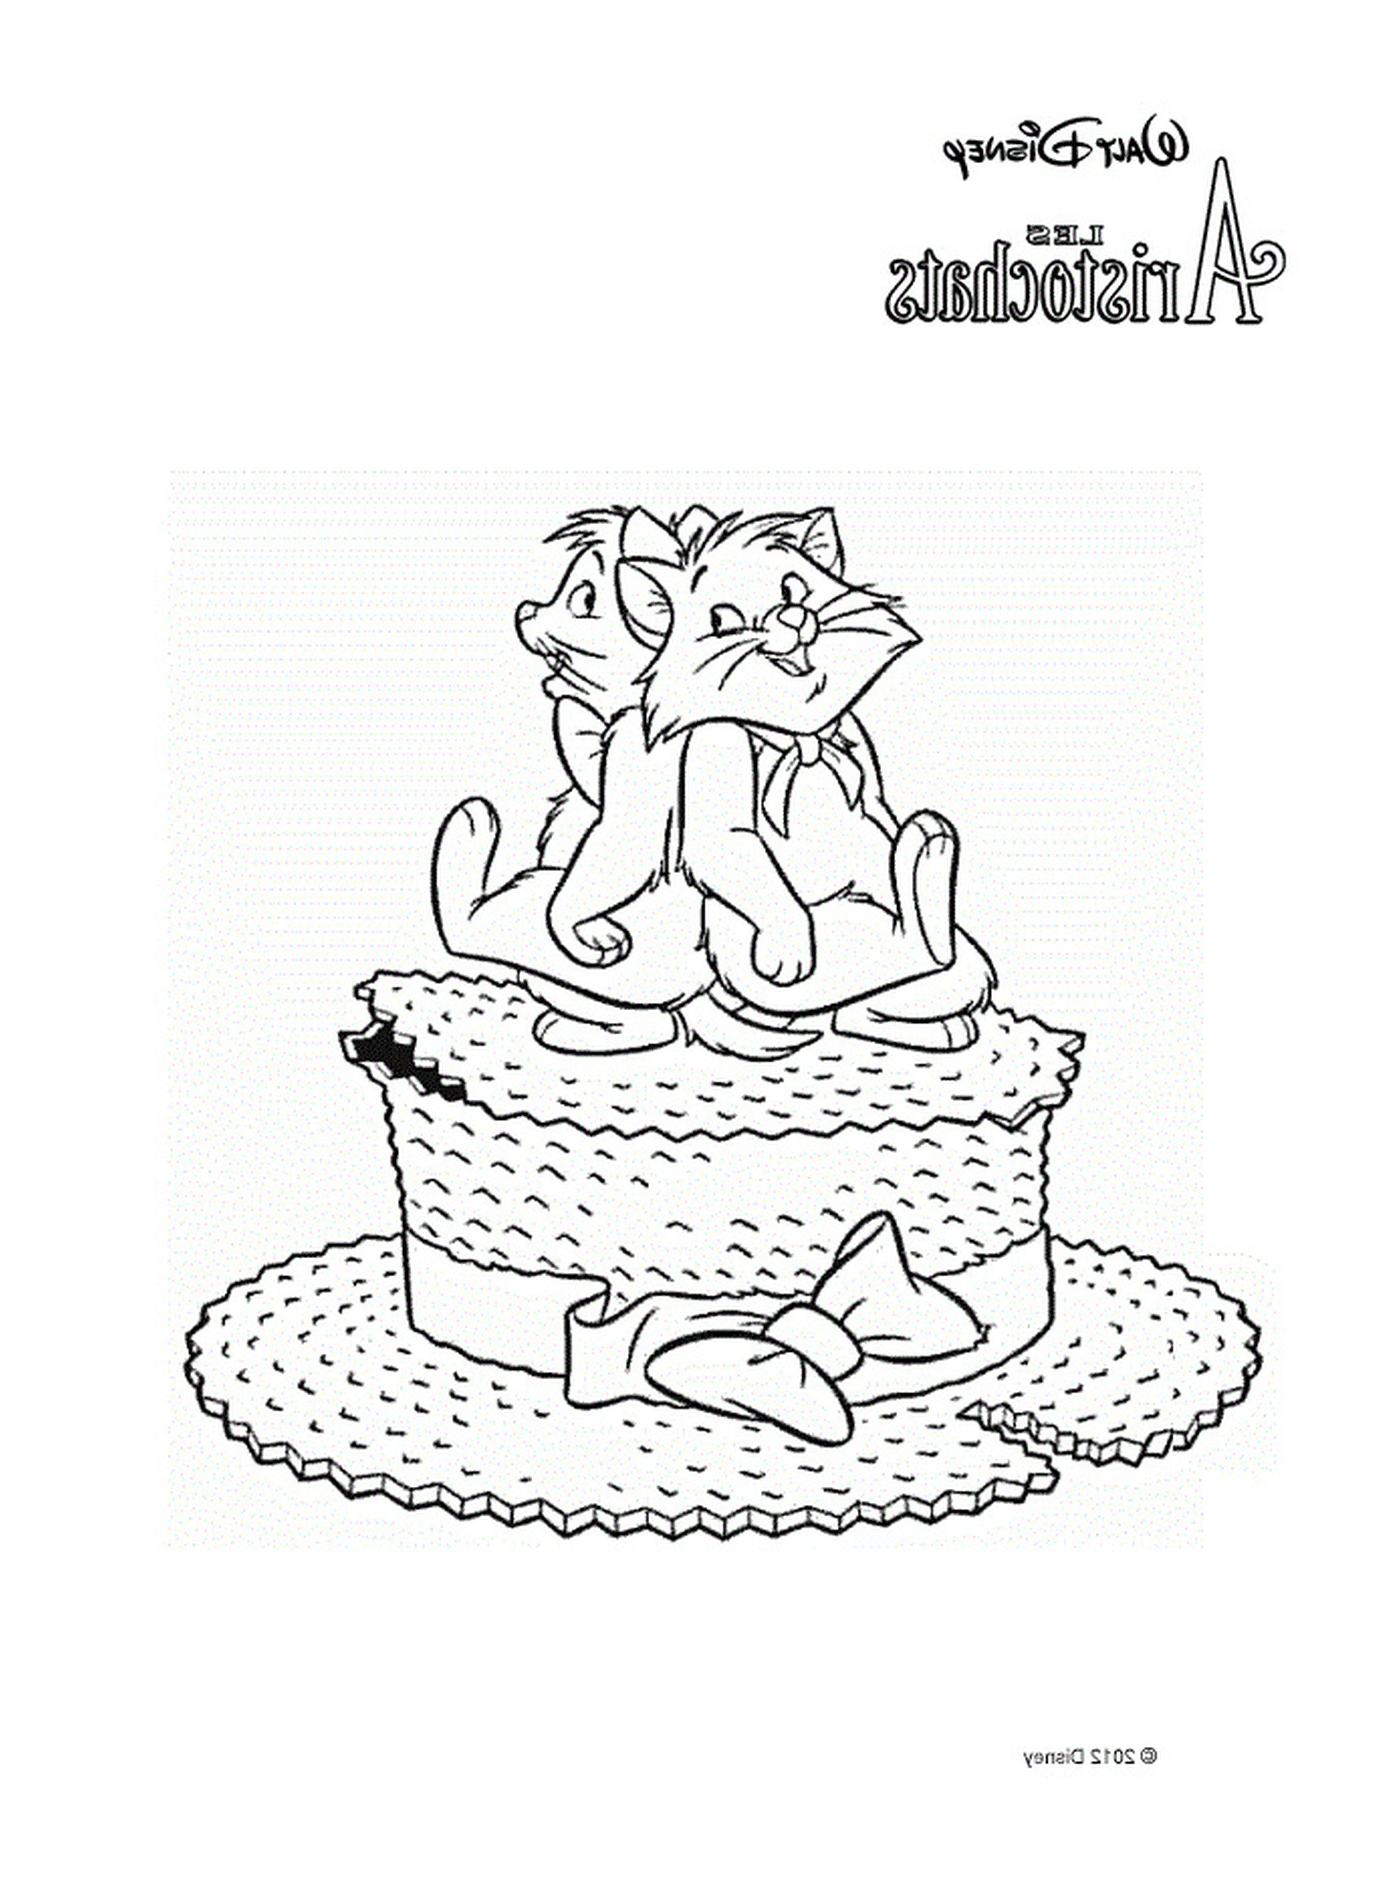  Dos gatos sentados en un gran pastel 